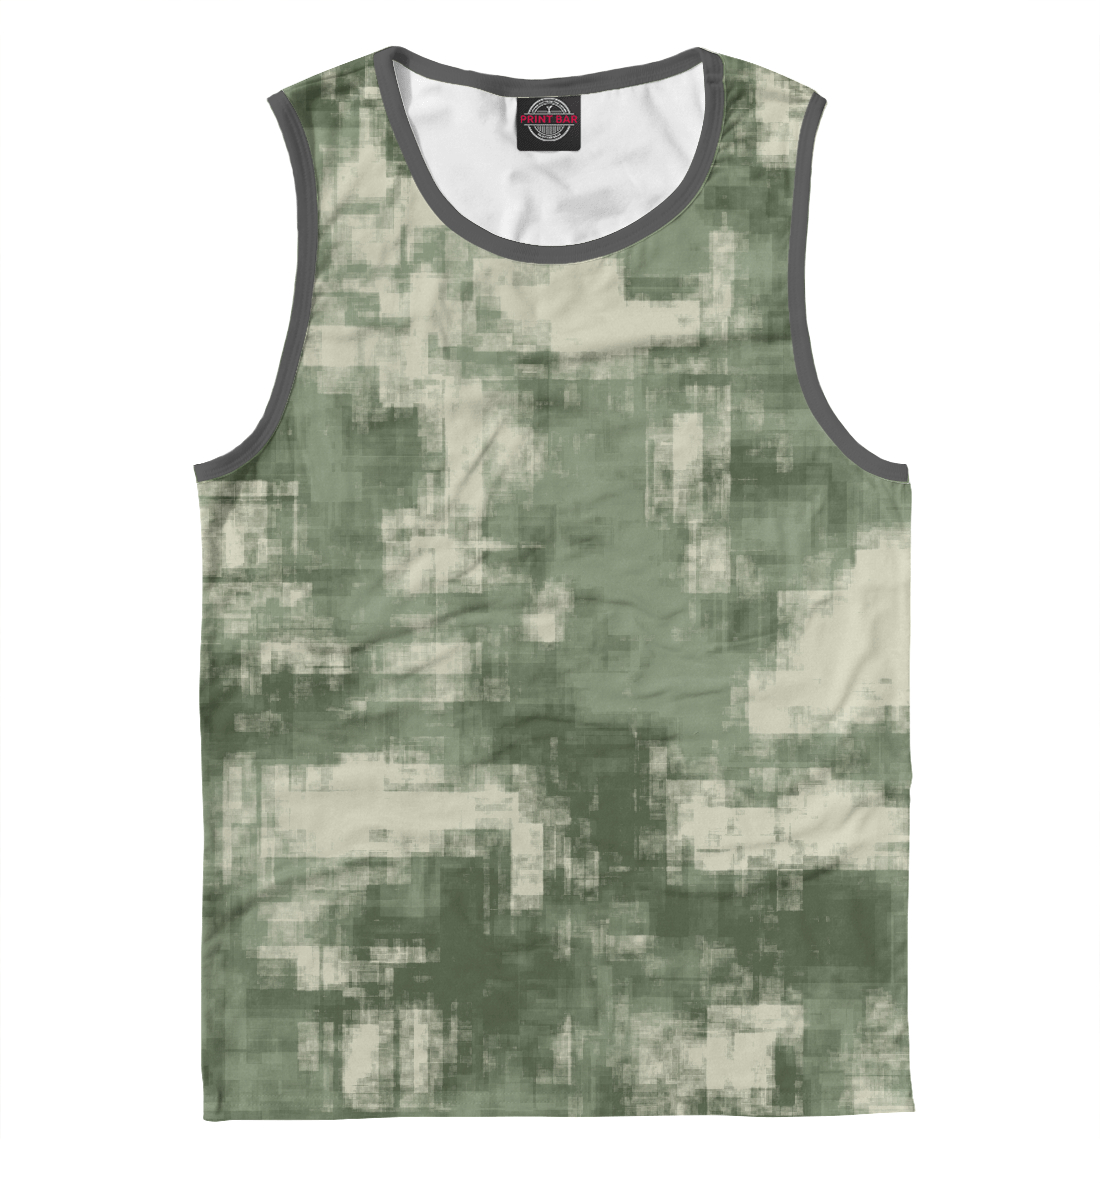 Мужская Майка Военный камуфляж- одежда для мужчин и женщин, артикул CMF-442561-may-2mp